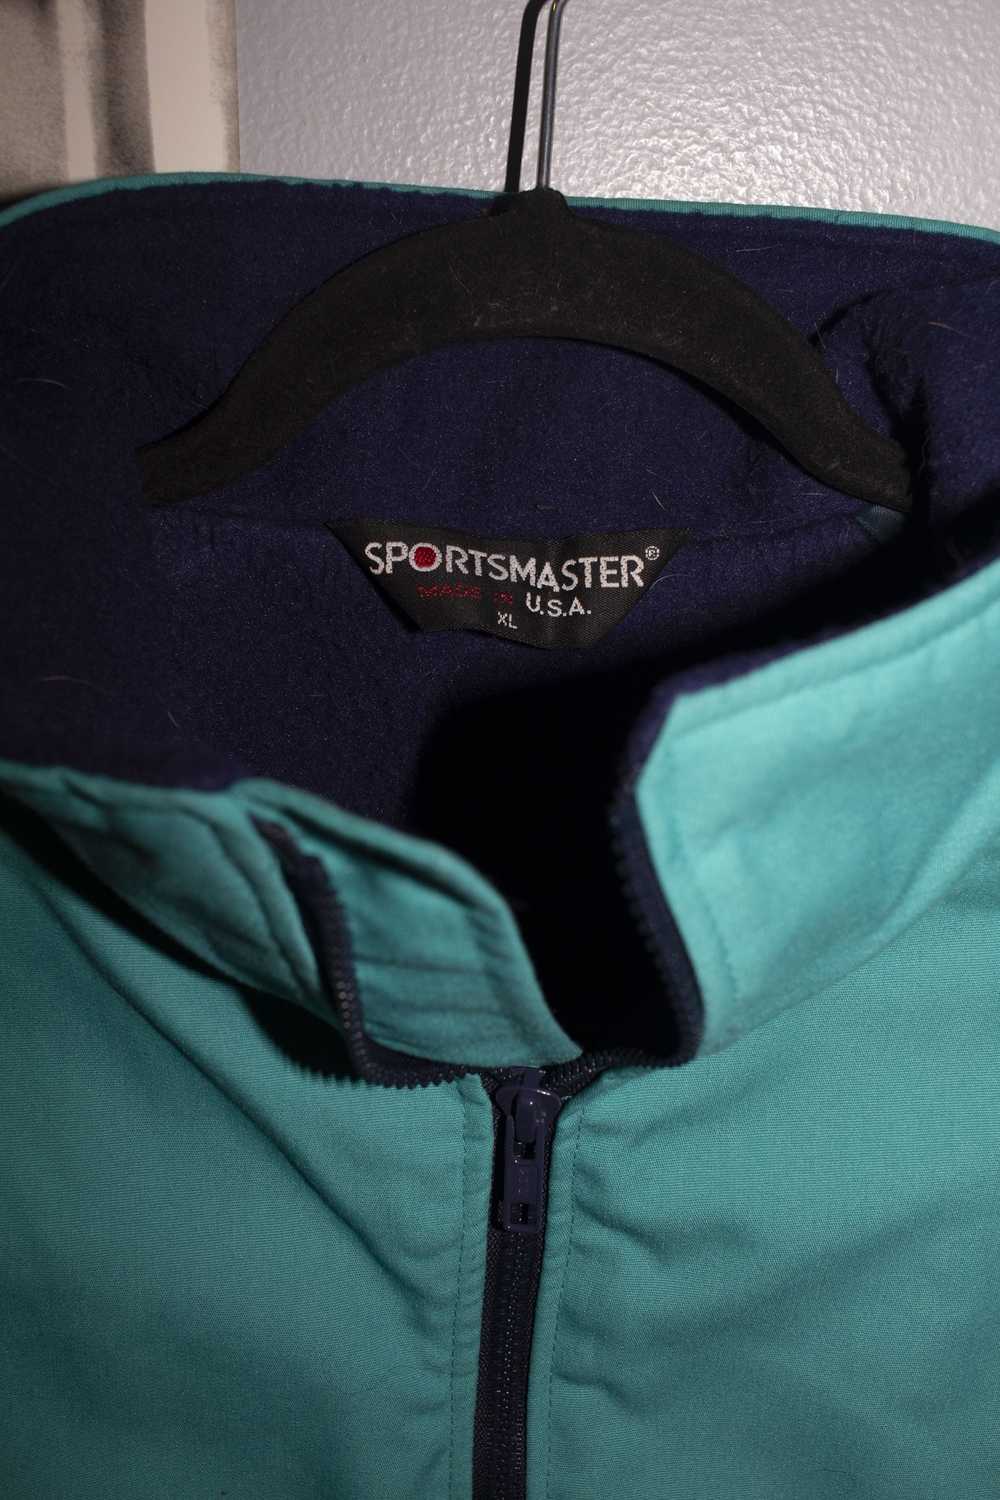 Vintage 90s Sportsmaster Bomber Jacket - image 3